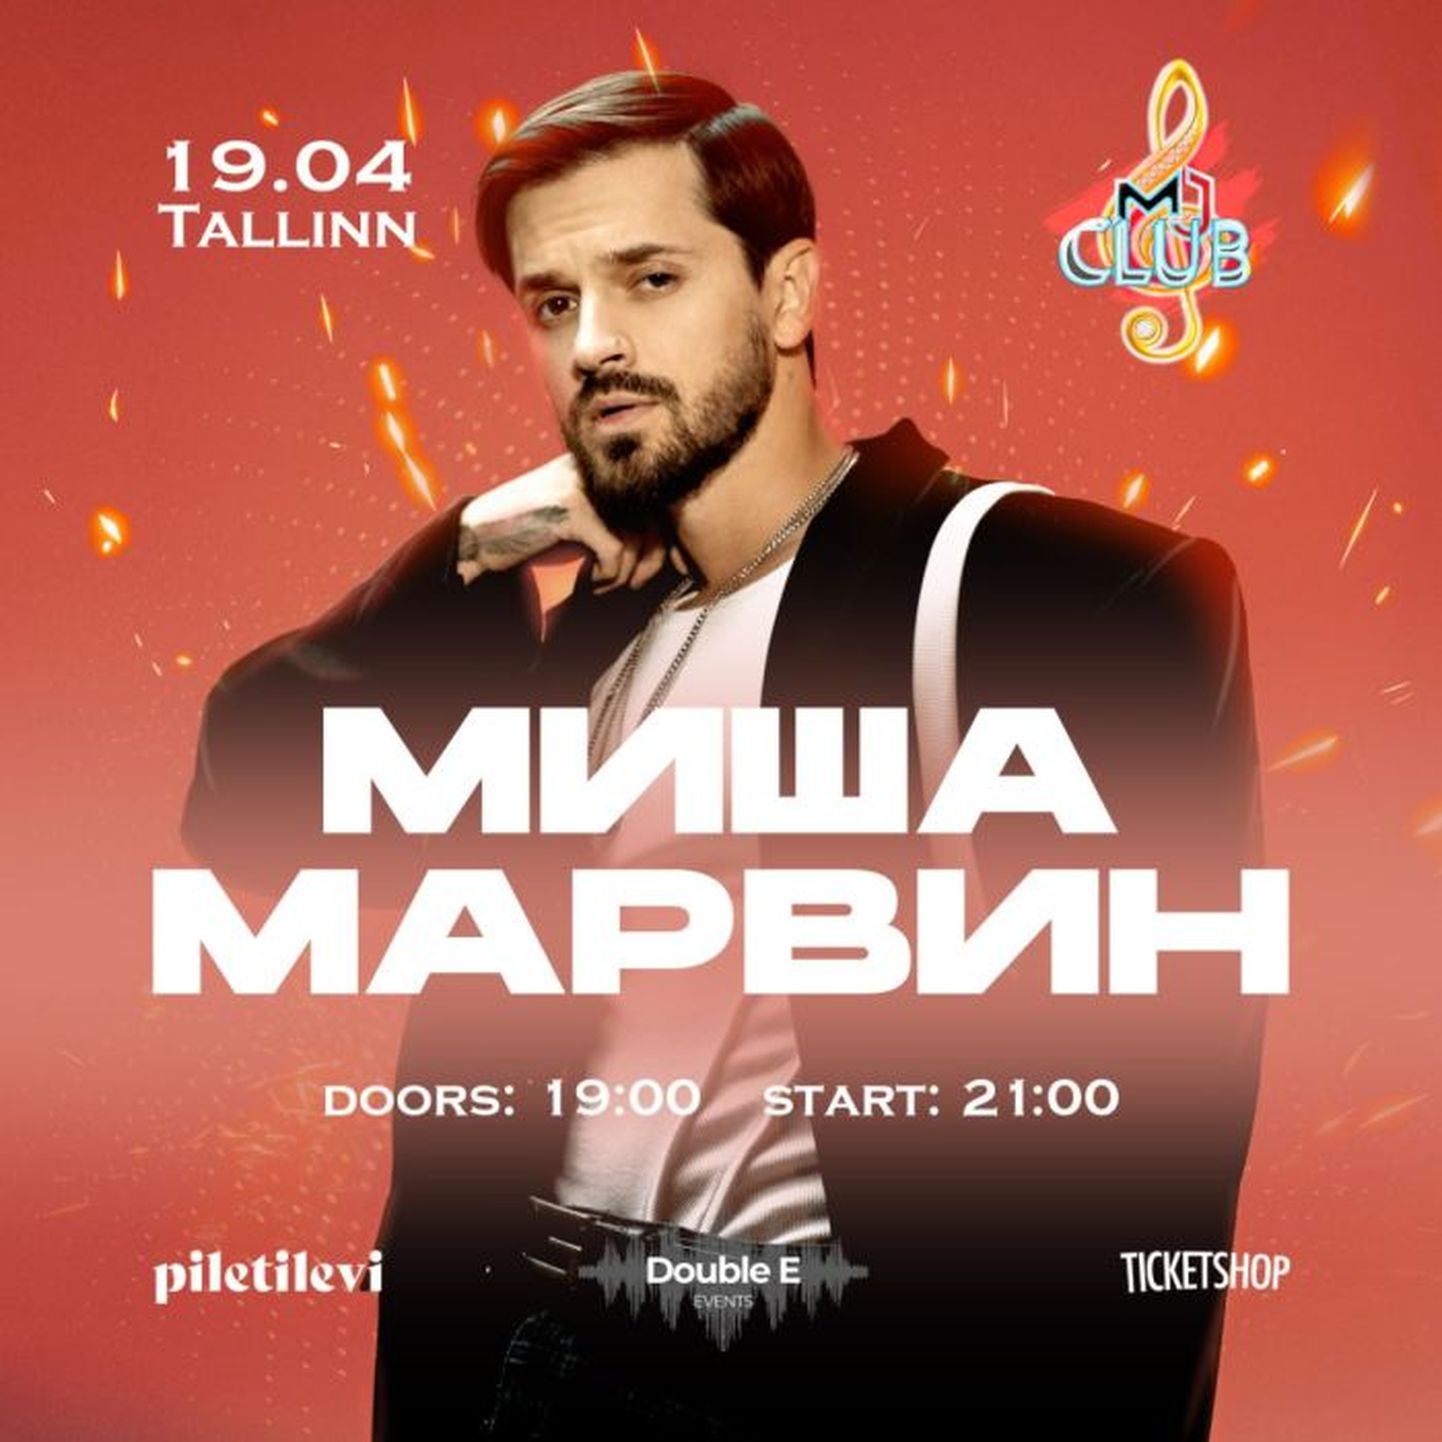 Афиша отмененного в итоге концерта Мишы Марвина в Таллинне.